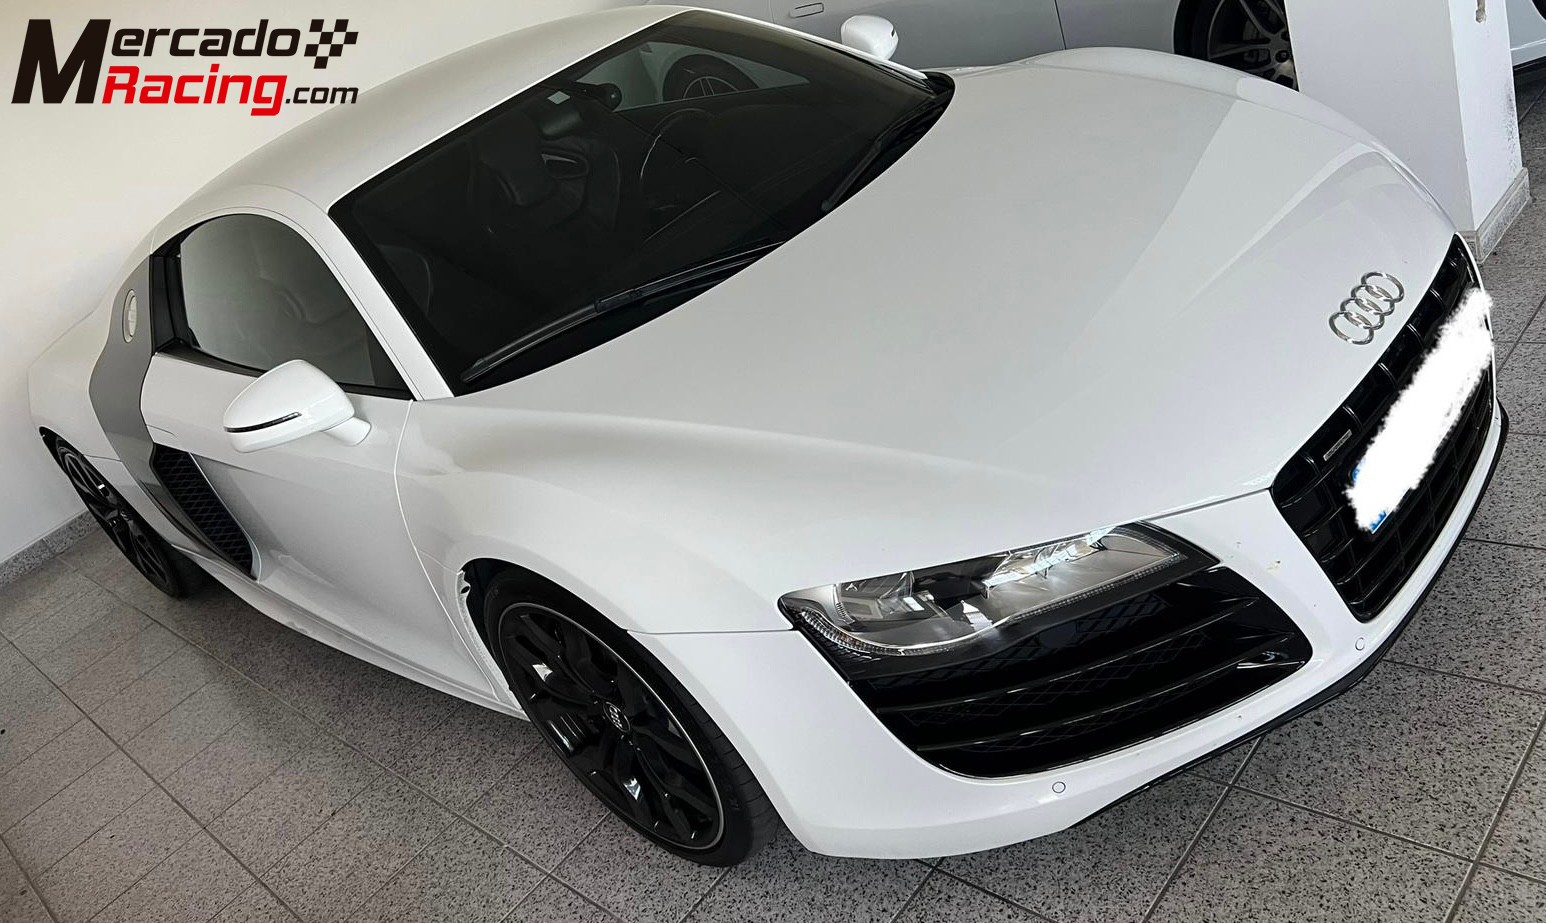 Audi r8 v10 - full carbon